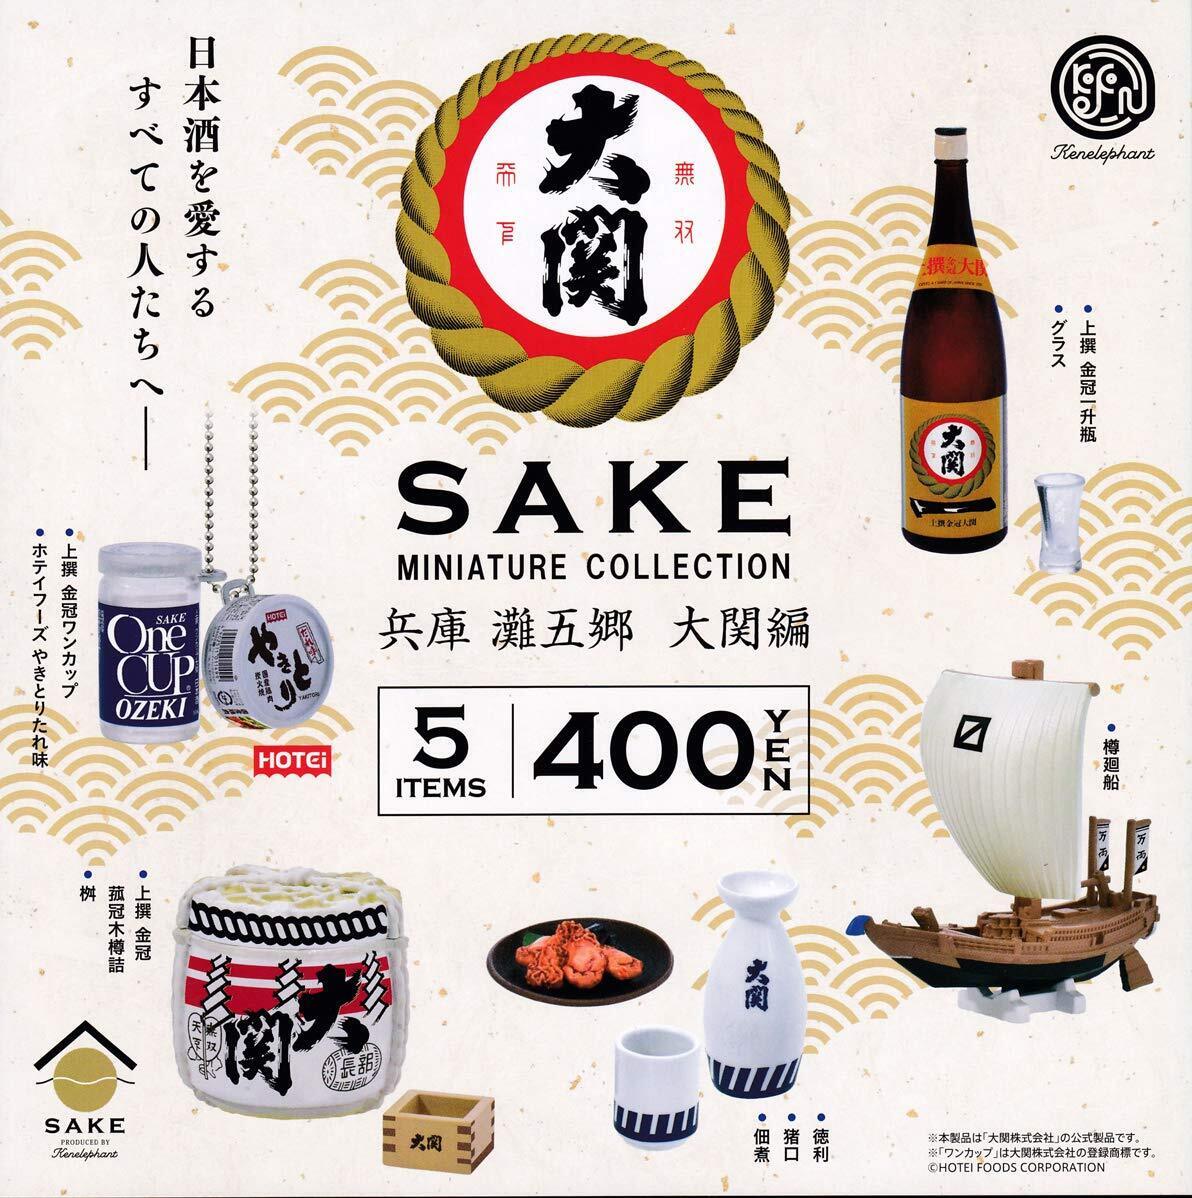 Sake miniature collection Hyogo Nada Gotogo Ozeki edition Capsule version [5 typ